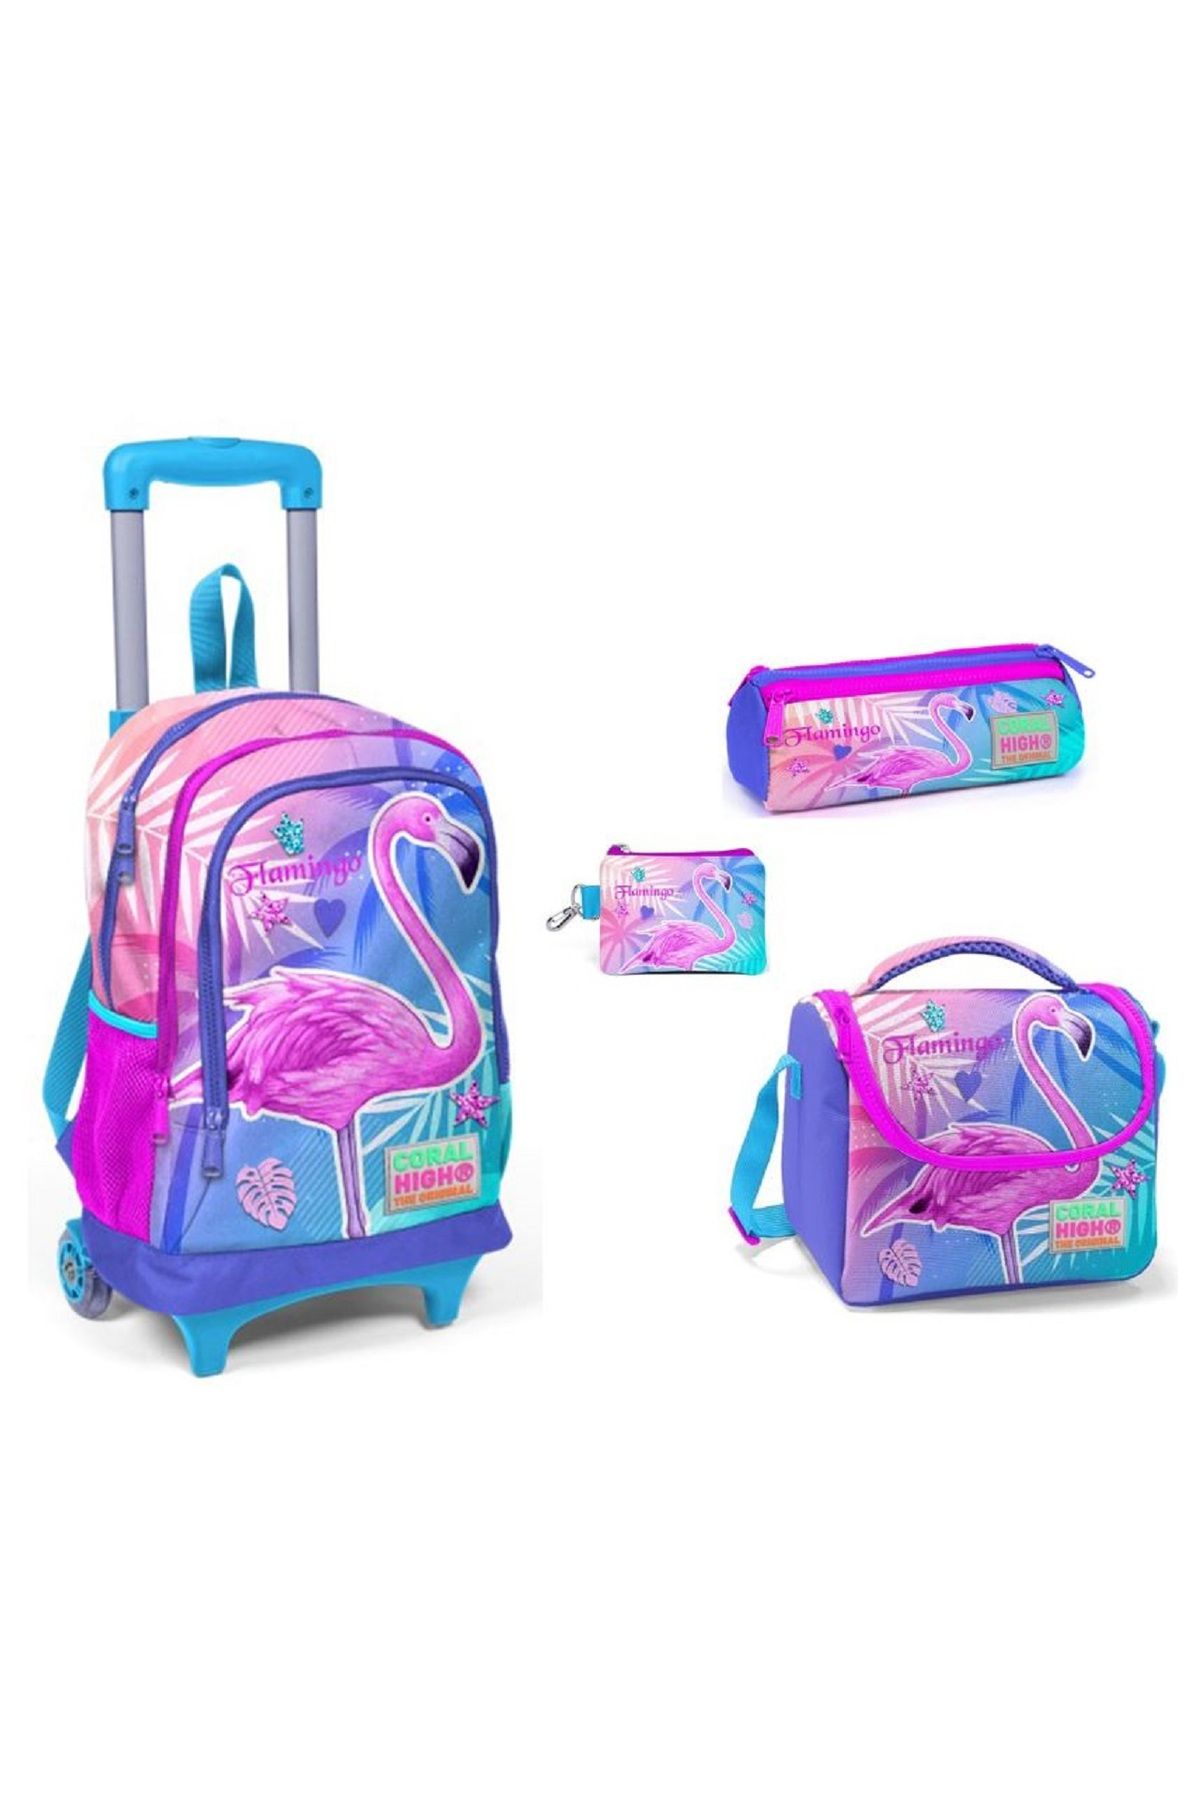 Coral High Tek flamingo Işıklı tekerlekli Çekçek çantalı kız çocuk ilkokul çanta seti- 4 PARÇALI SET